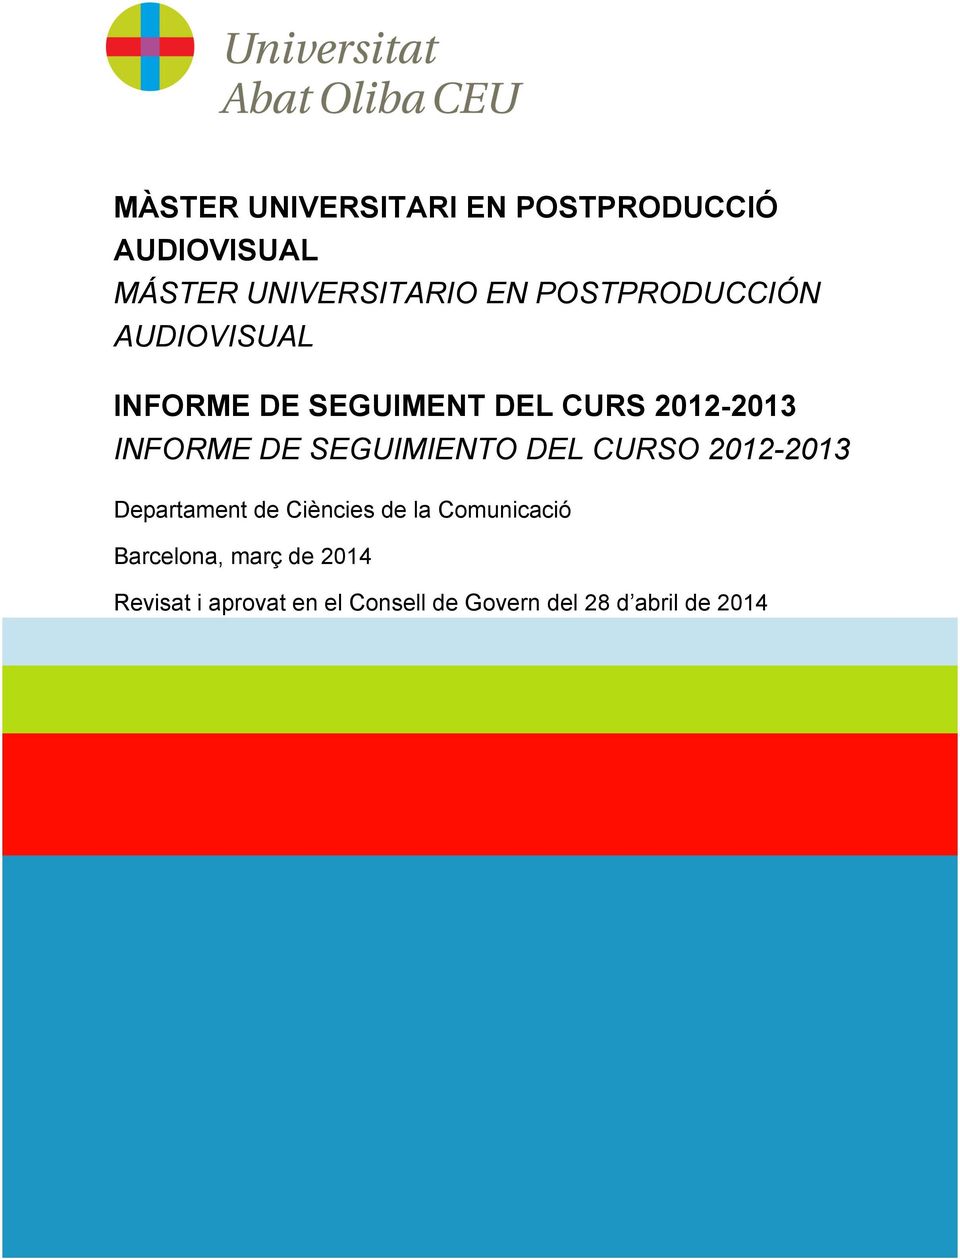 SEGUIMIENTO DEL CURSO 2012-2013 Departament de Ciències de la Comunicació